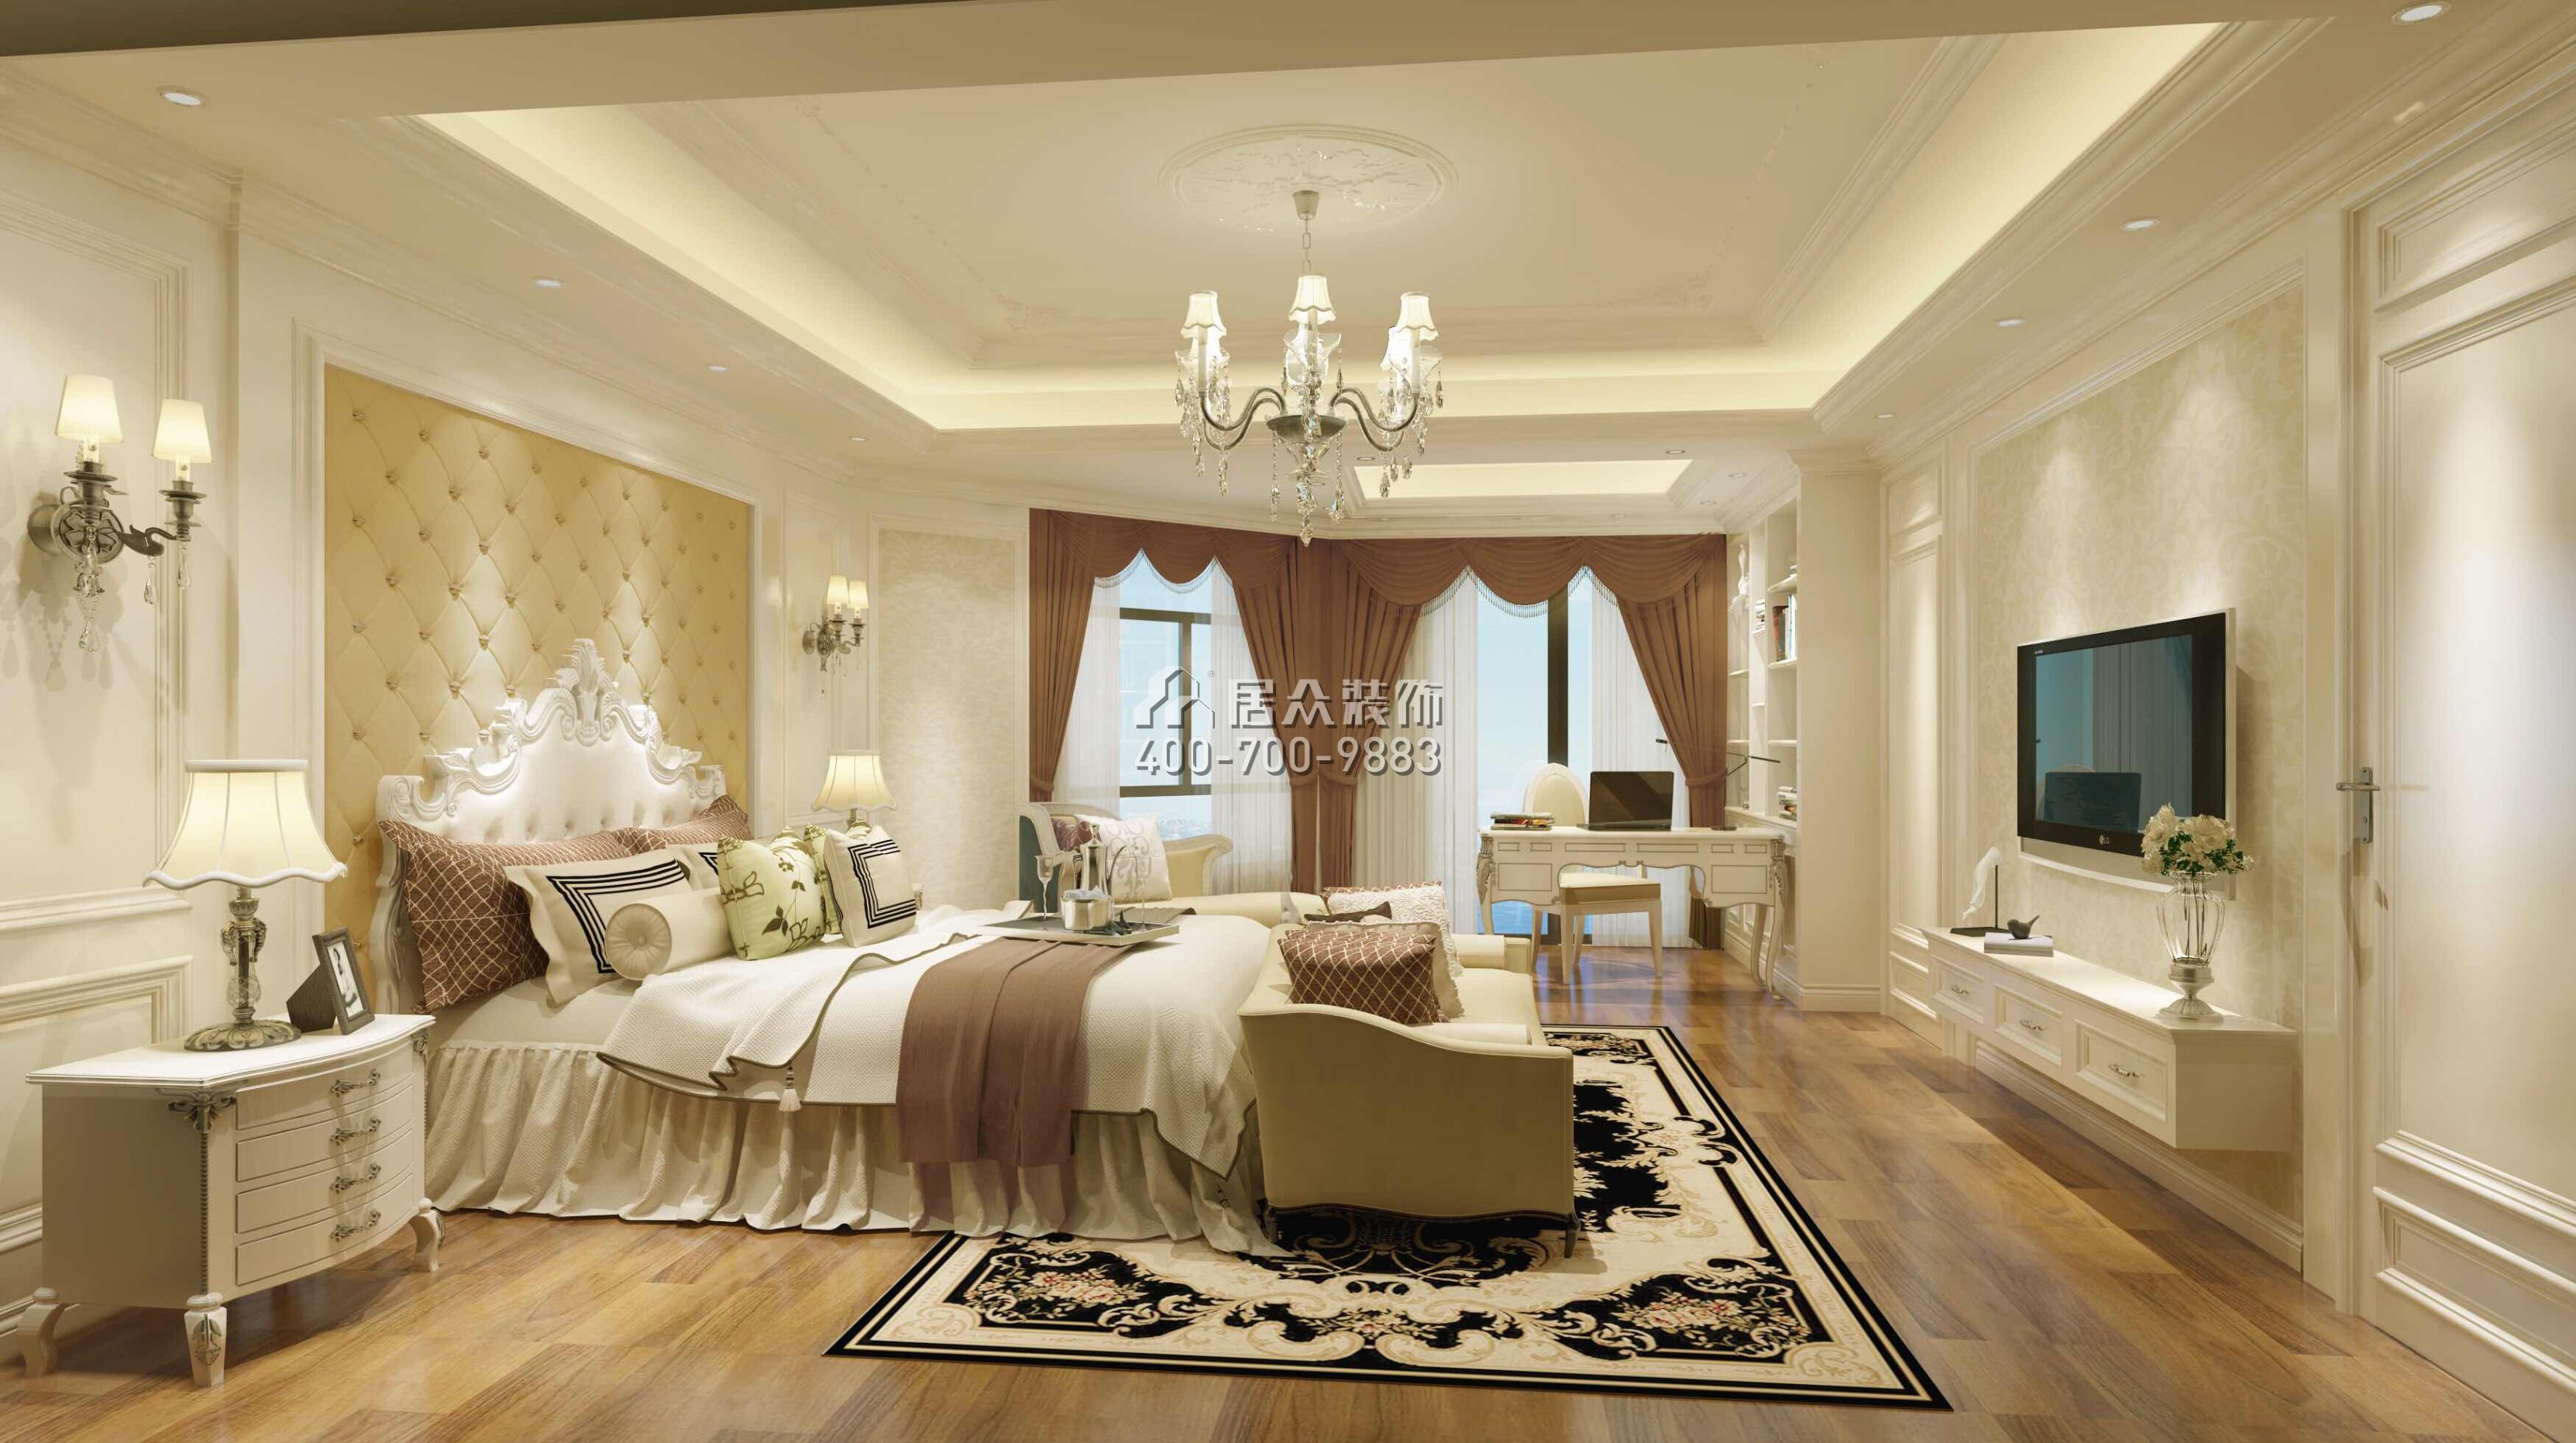 美加广场270平方米欧式风格复式户型卧室装修效果图